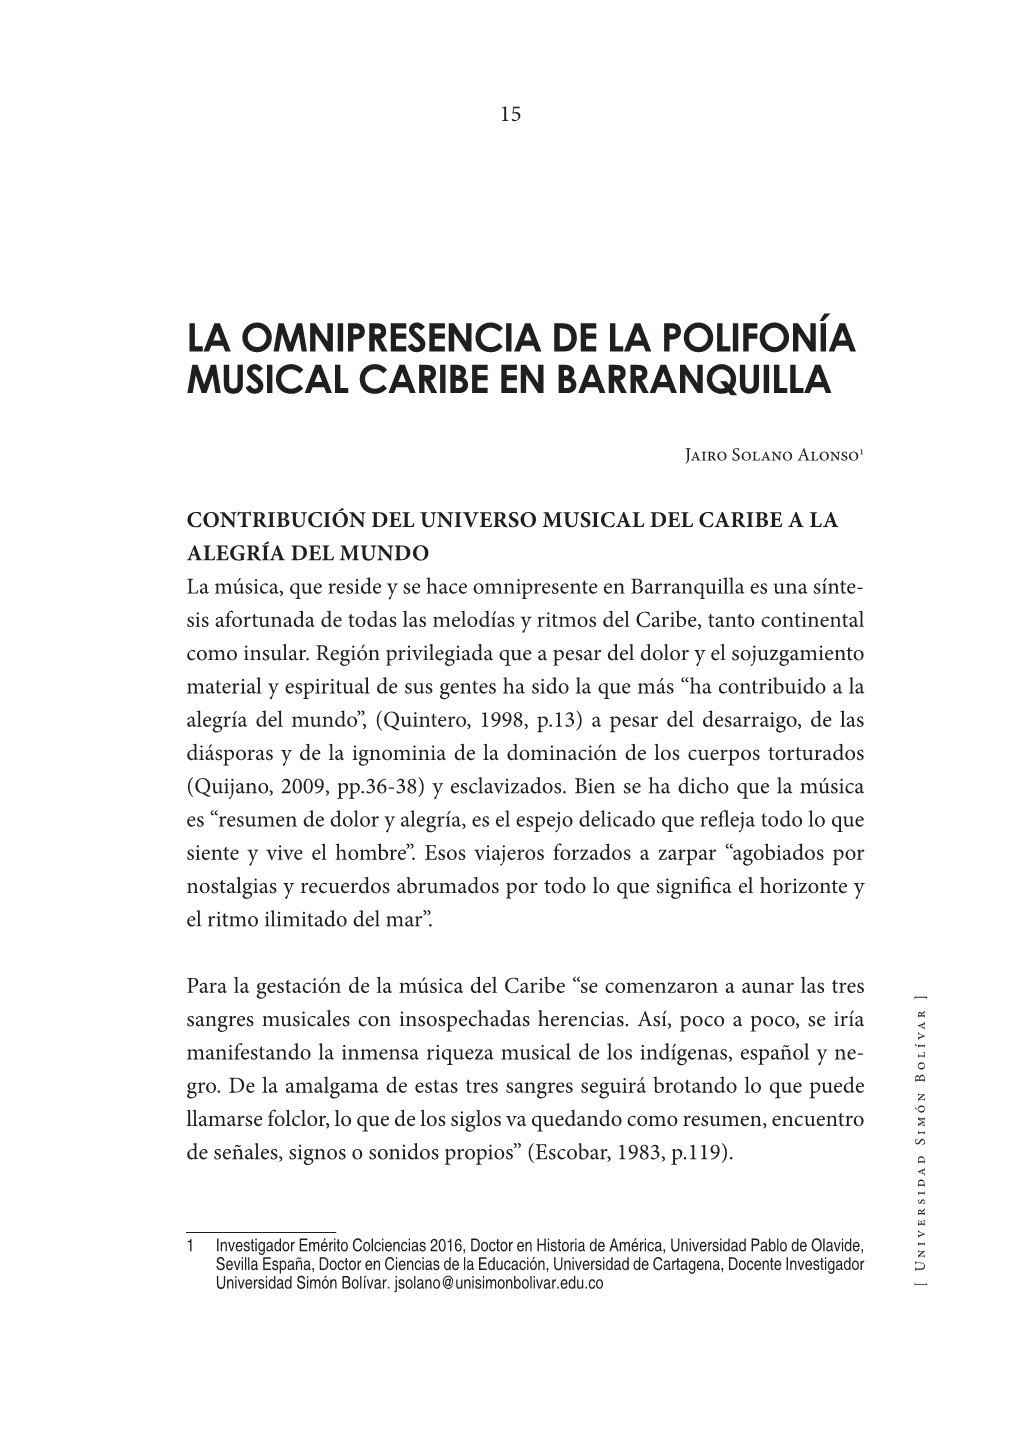 La Omnipresencia De La Polifonía Musical Caribe En Barranquilla